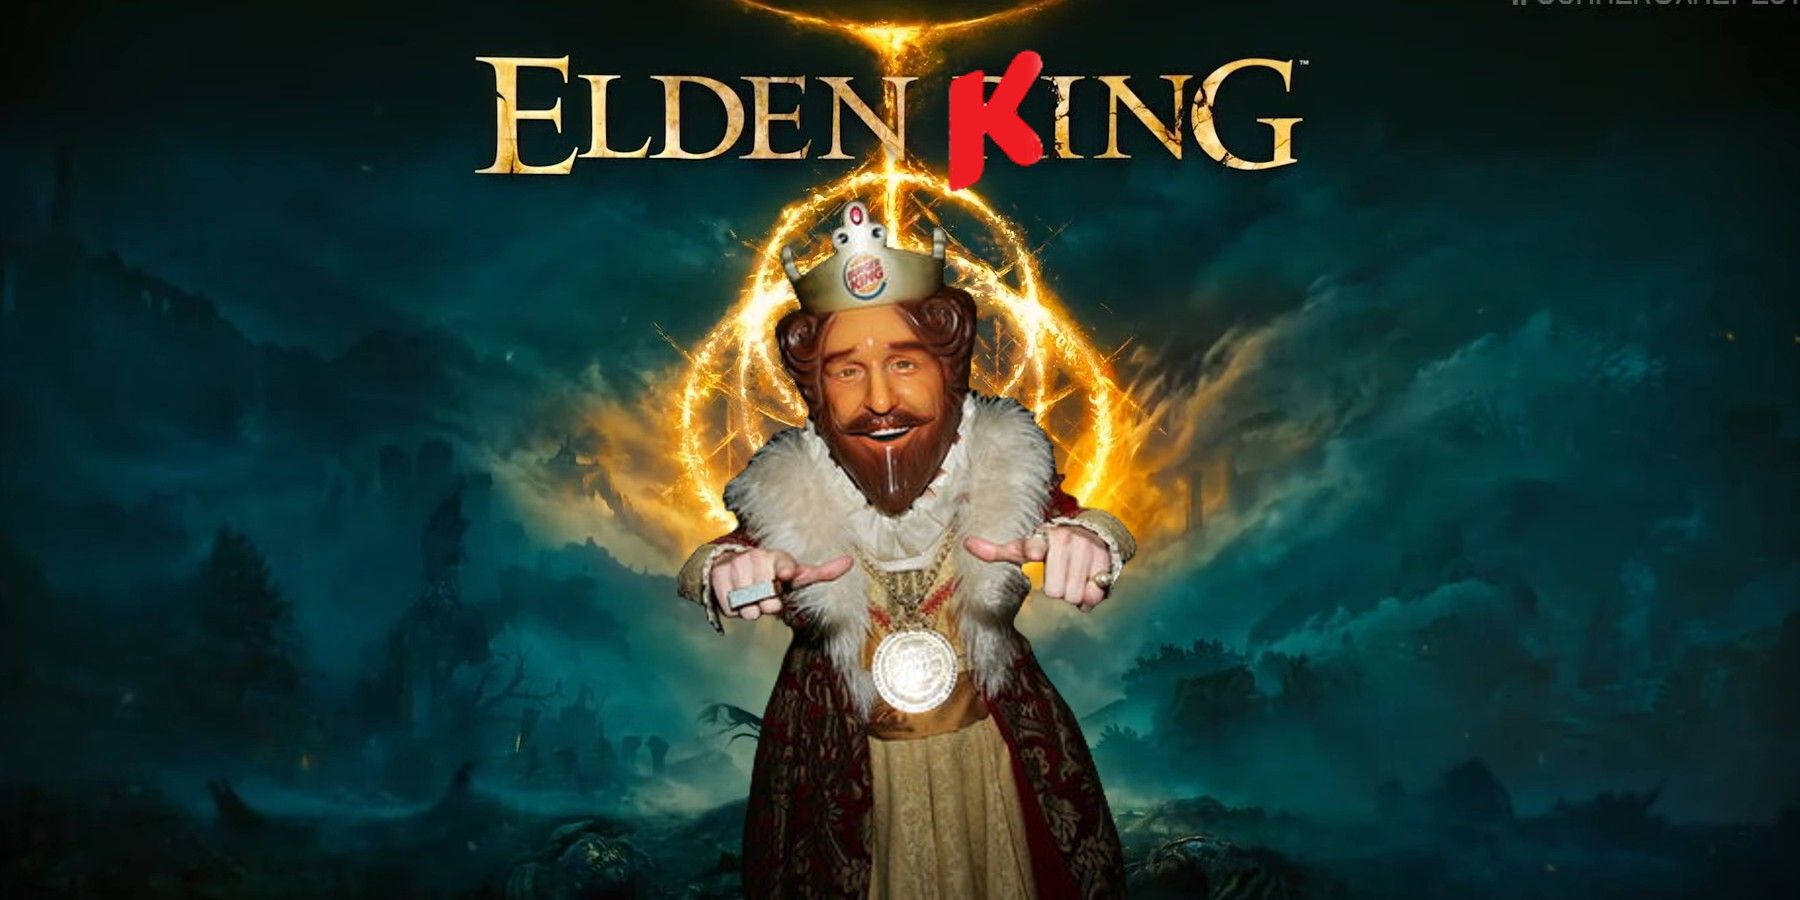 Elden Ring Is Actually The Sneak King Sequel We Never Got